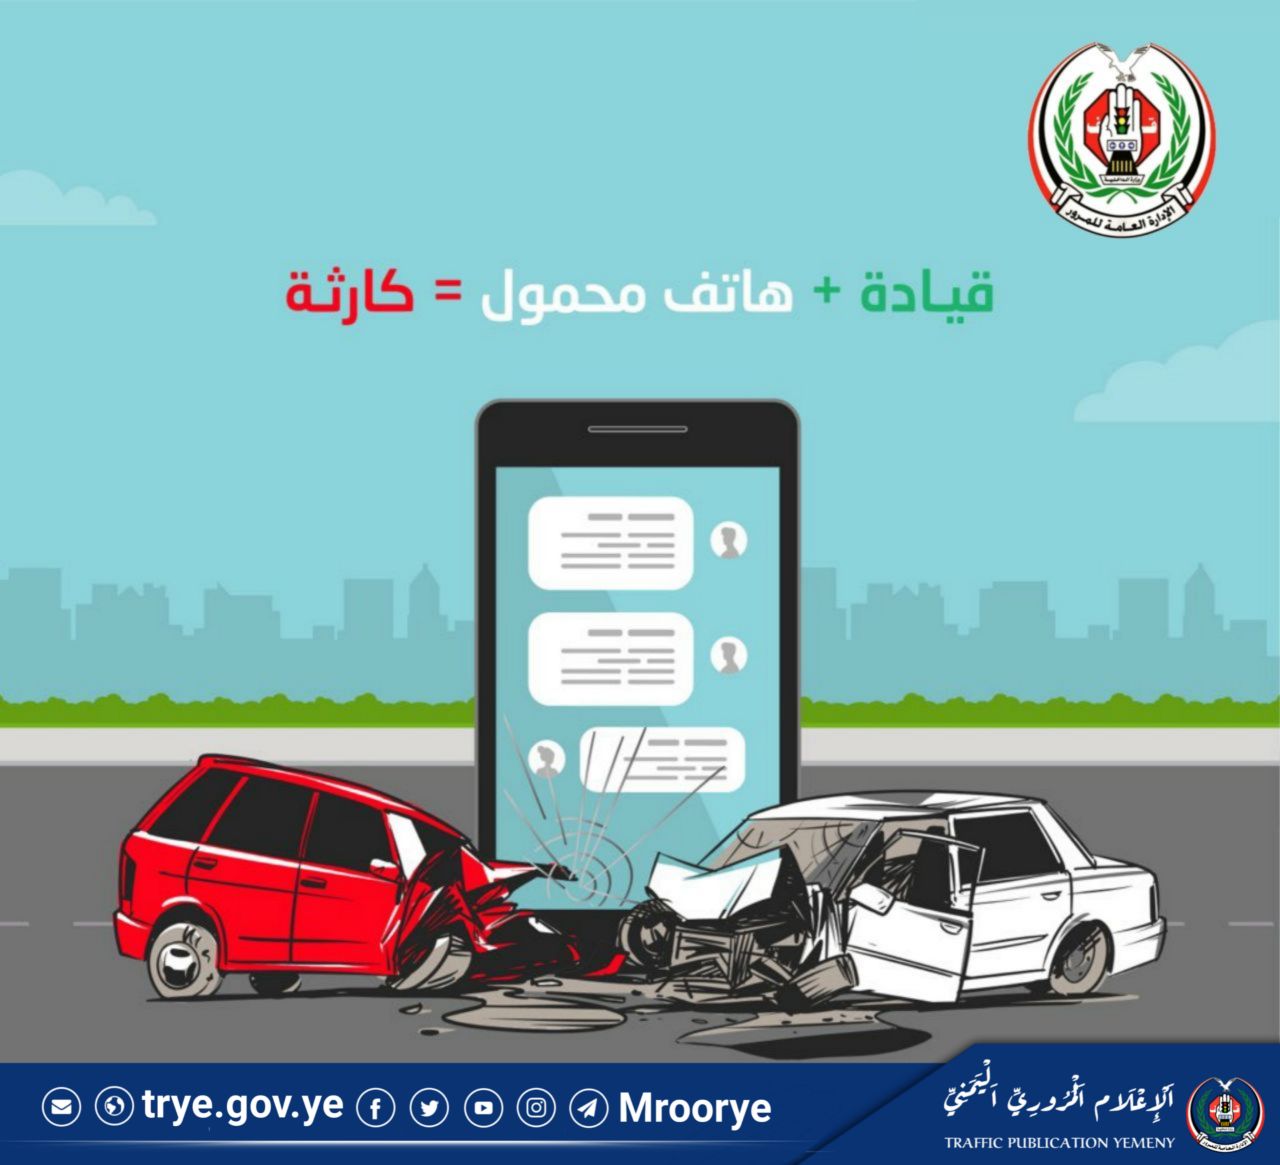 التوعية المرورية :مجموعة من الإجراءات التي تهدف إلى توعية السائقين والمشاة بقواعد المرور